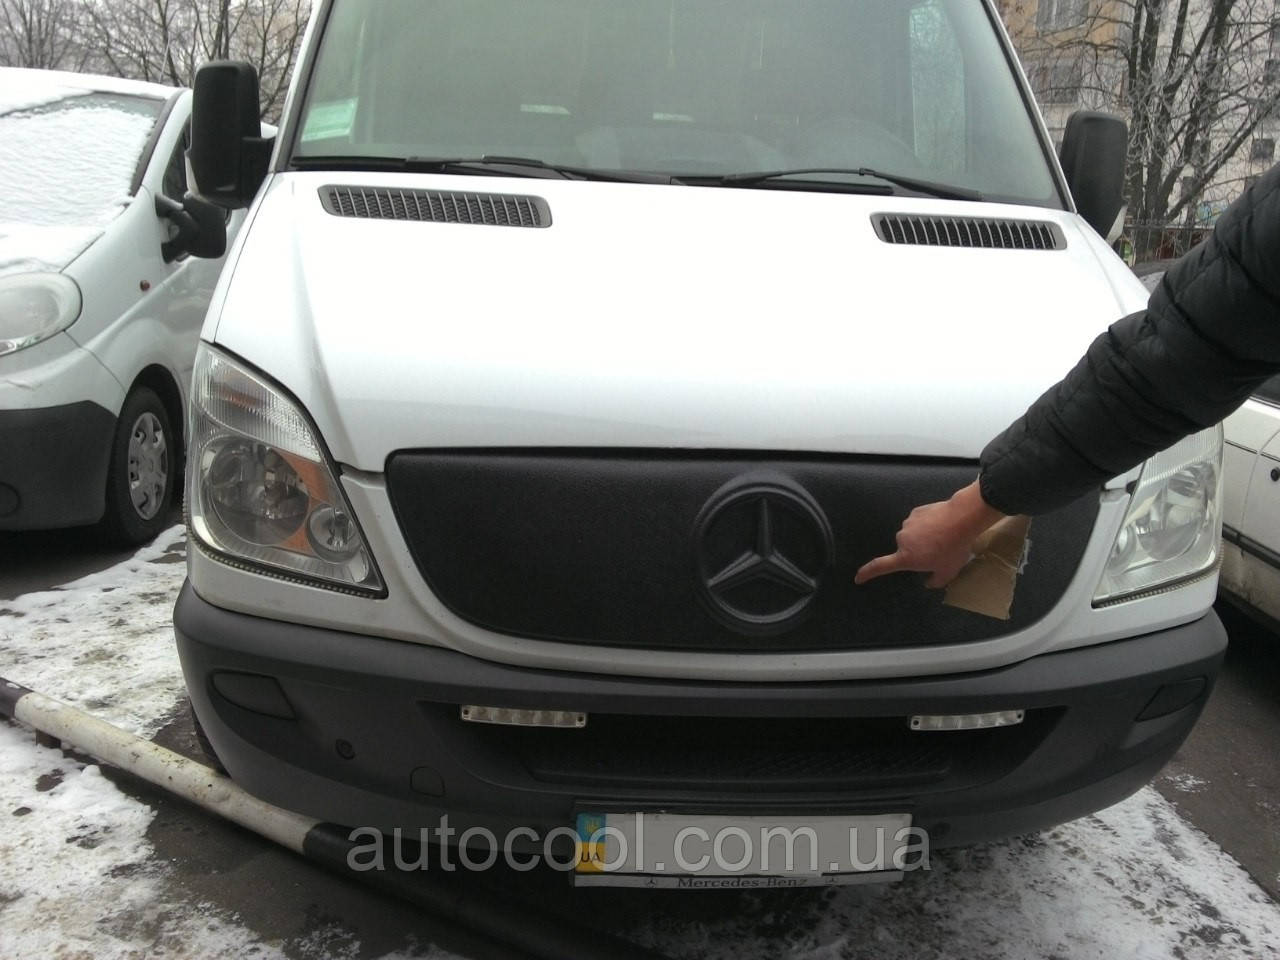 Зимова заглушка на решітку радіатора матова Mercedes Sprinter 2006-2012 г